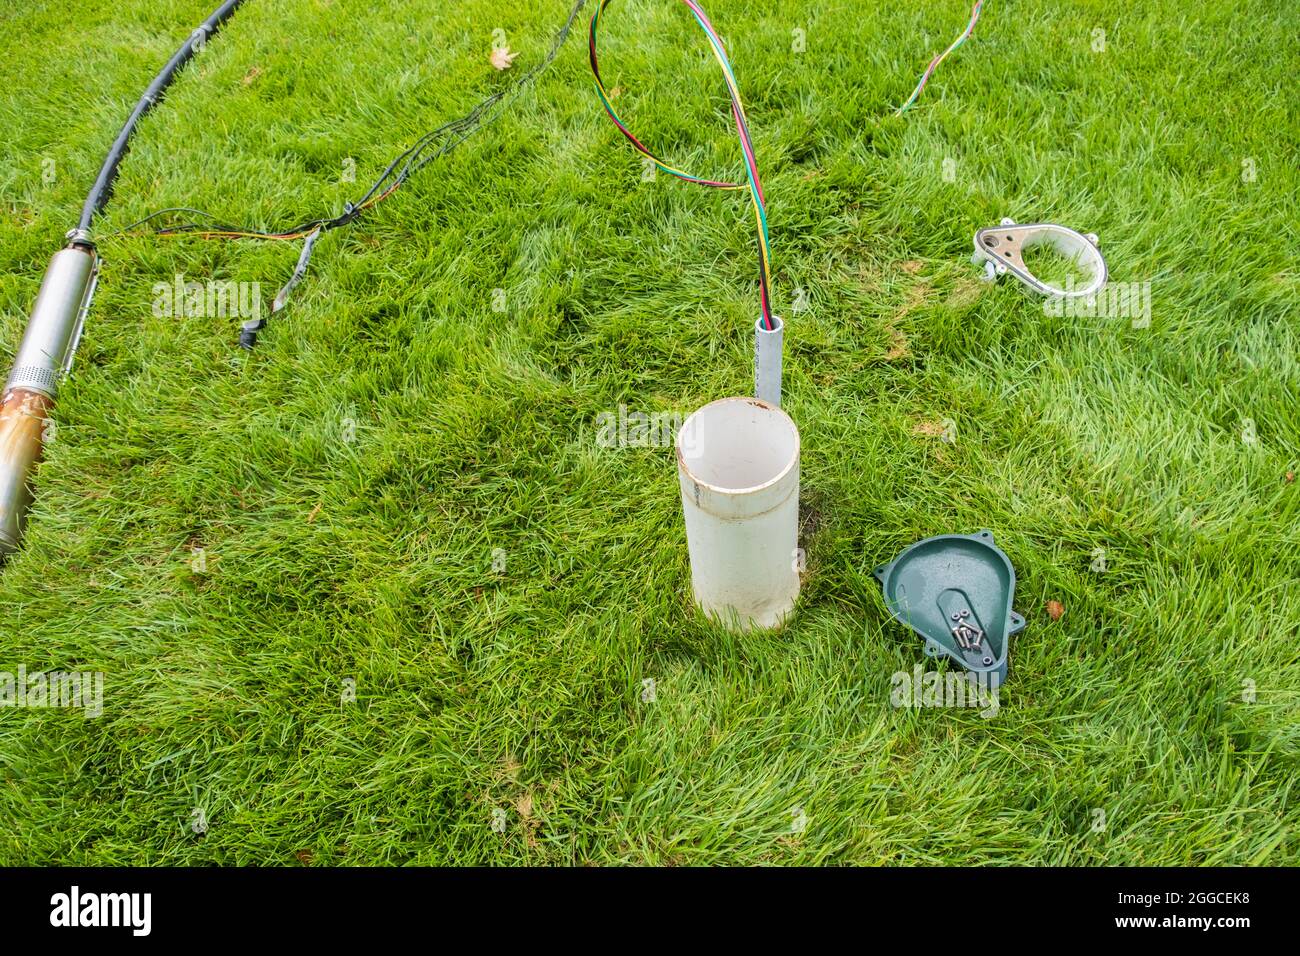 Défaillance de la pompe sprinkleur en sol, située dans une grande herbe fétuque, en cours de remplacement. Une tête de puits d'eau. Banque D'Images